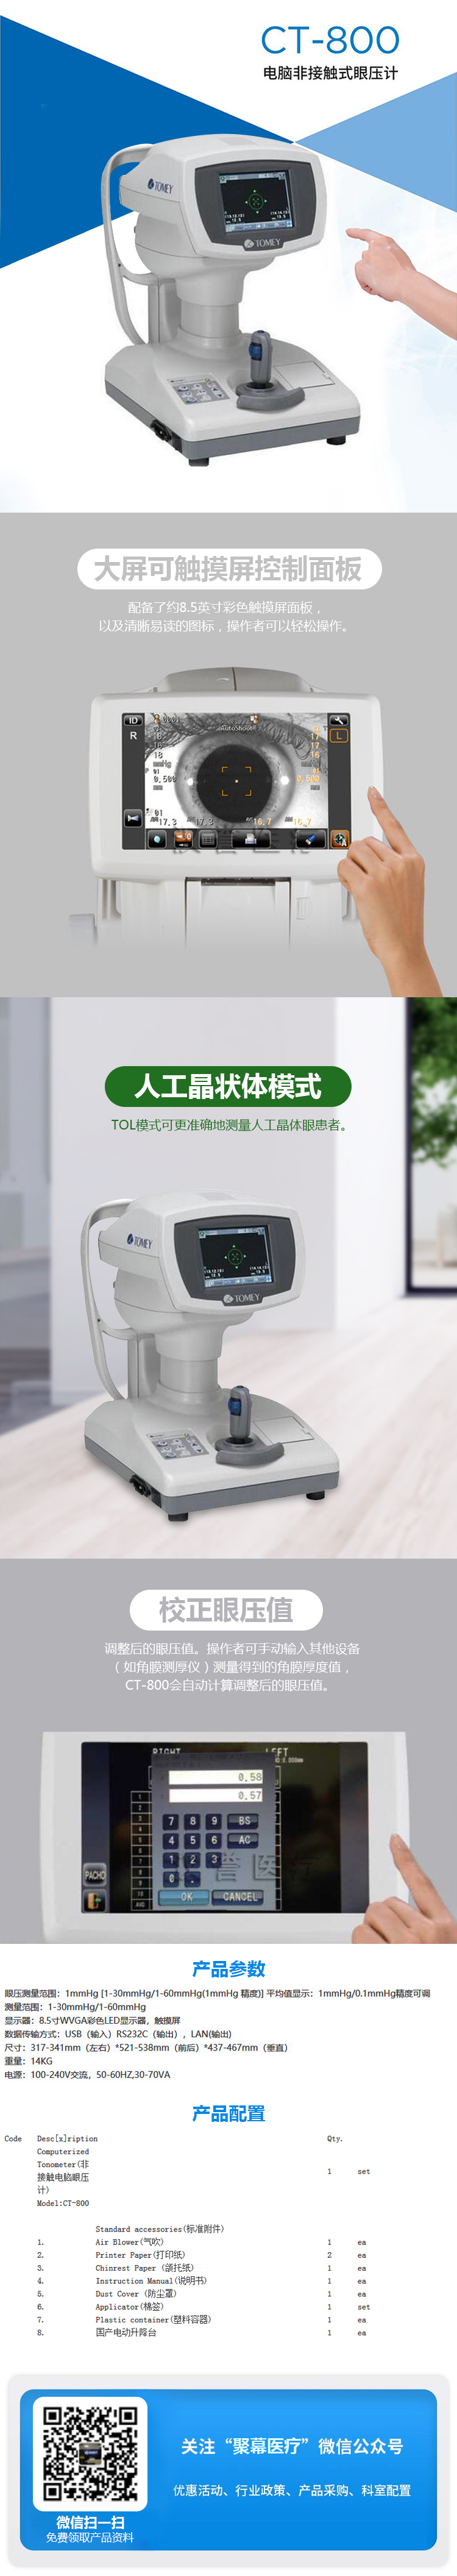 日本拓普康CT-800 电脑非接触式眼压计.jpg